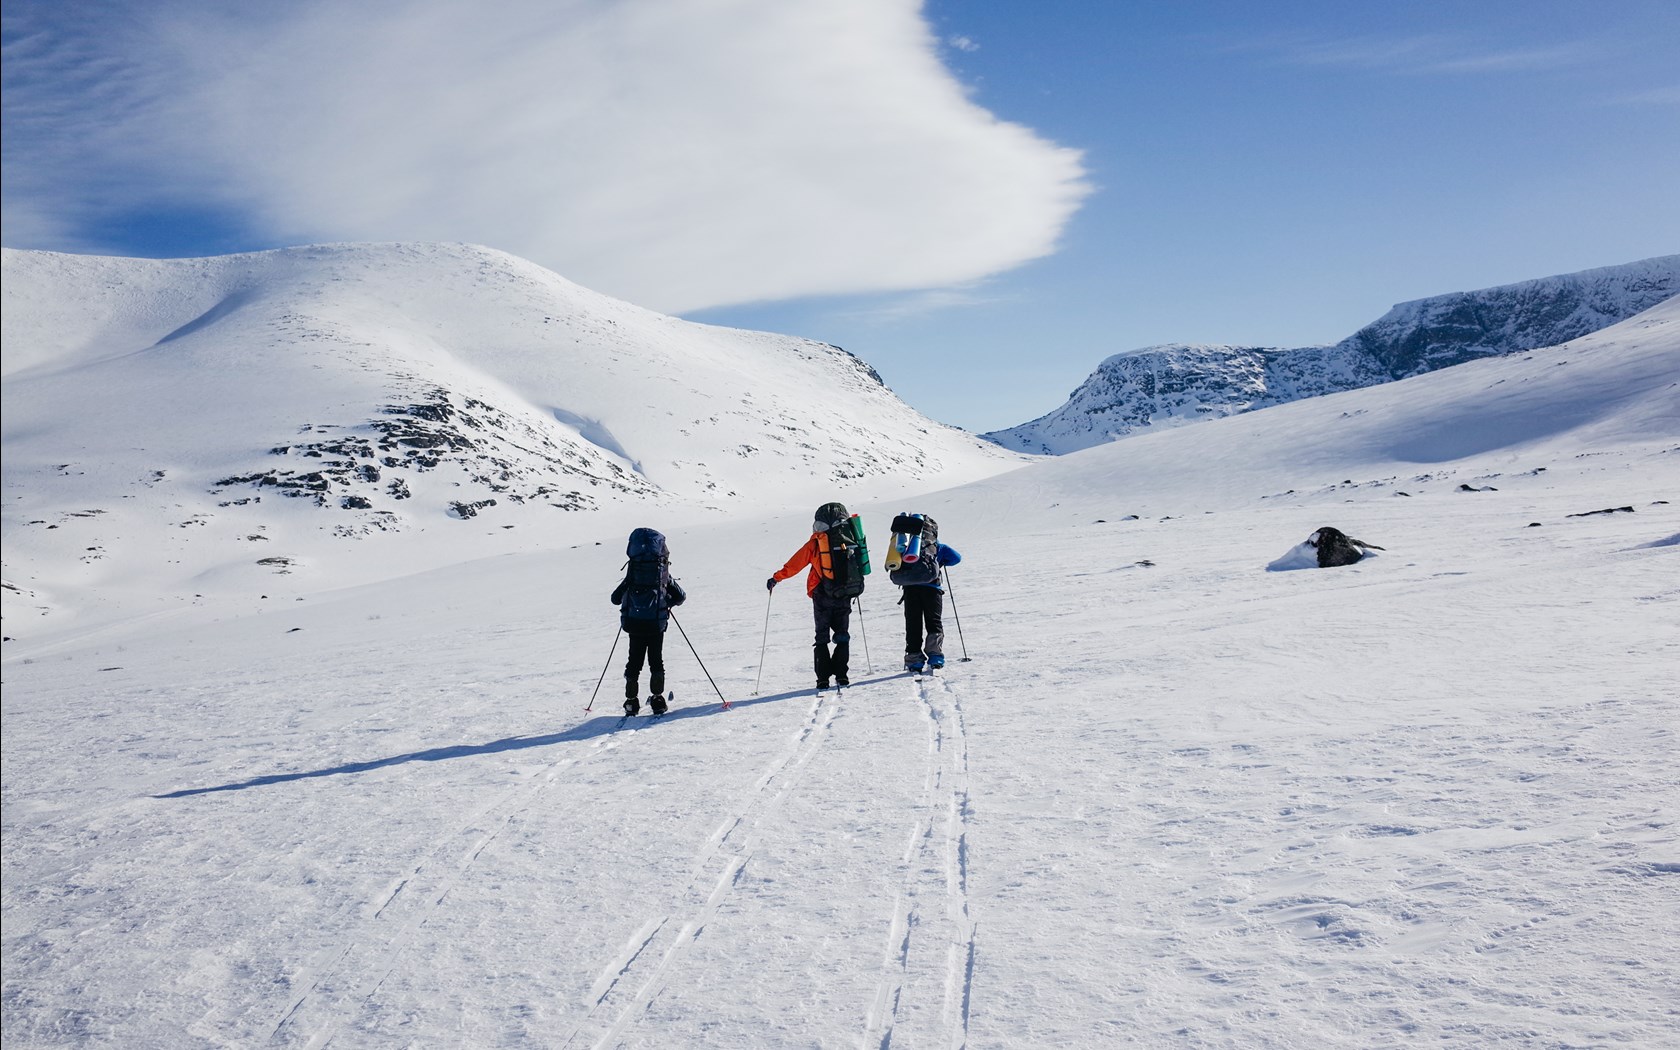 En gruppe på fjellskitur i slakt terreng.